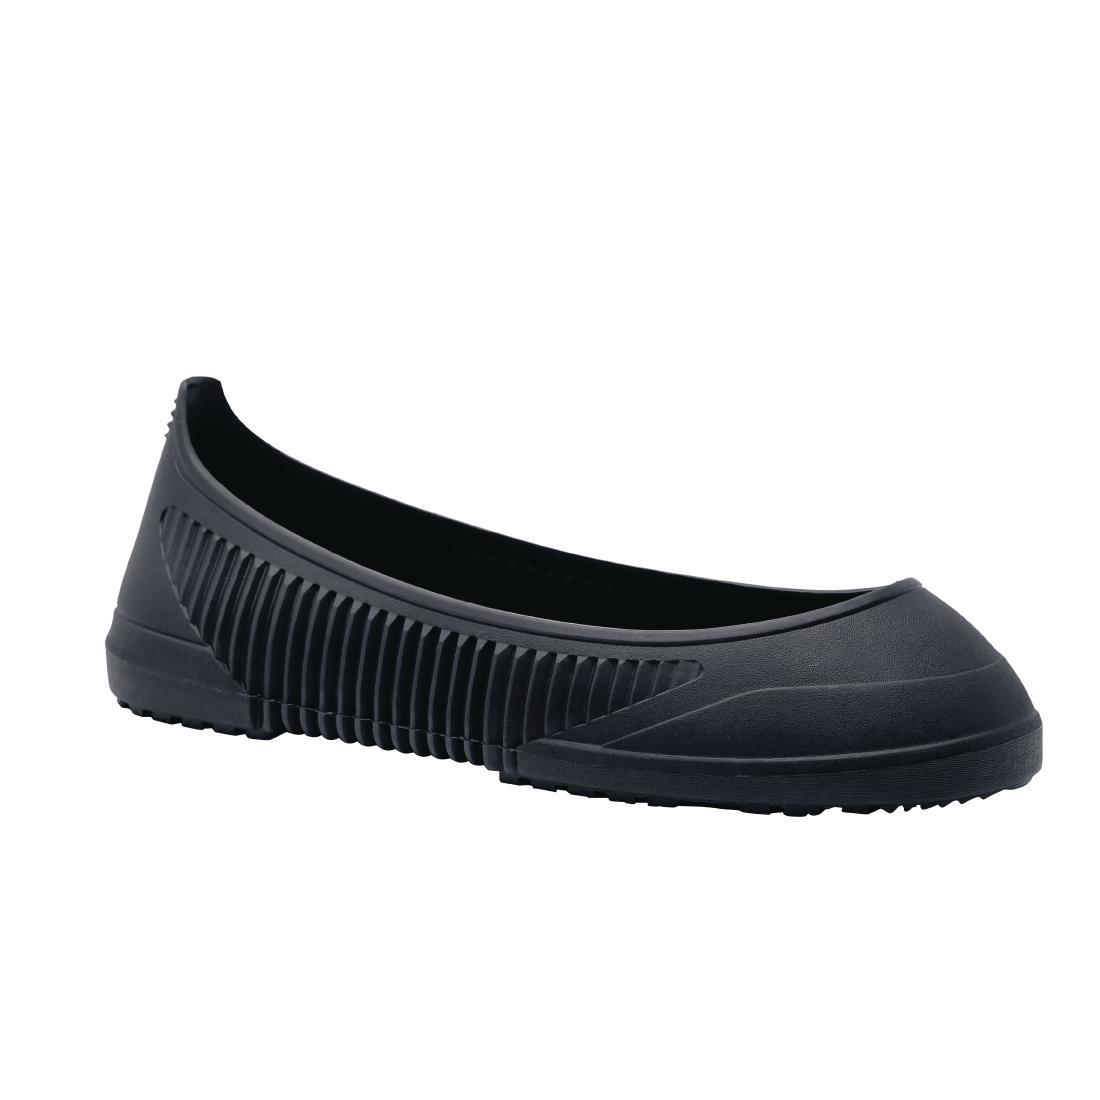 Shoes for Crews Crewguard Overshoes Black Size L - BB598-L  - 1